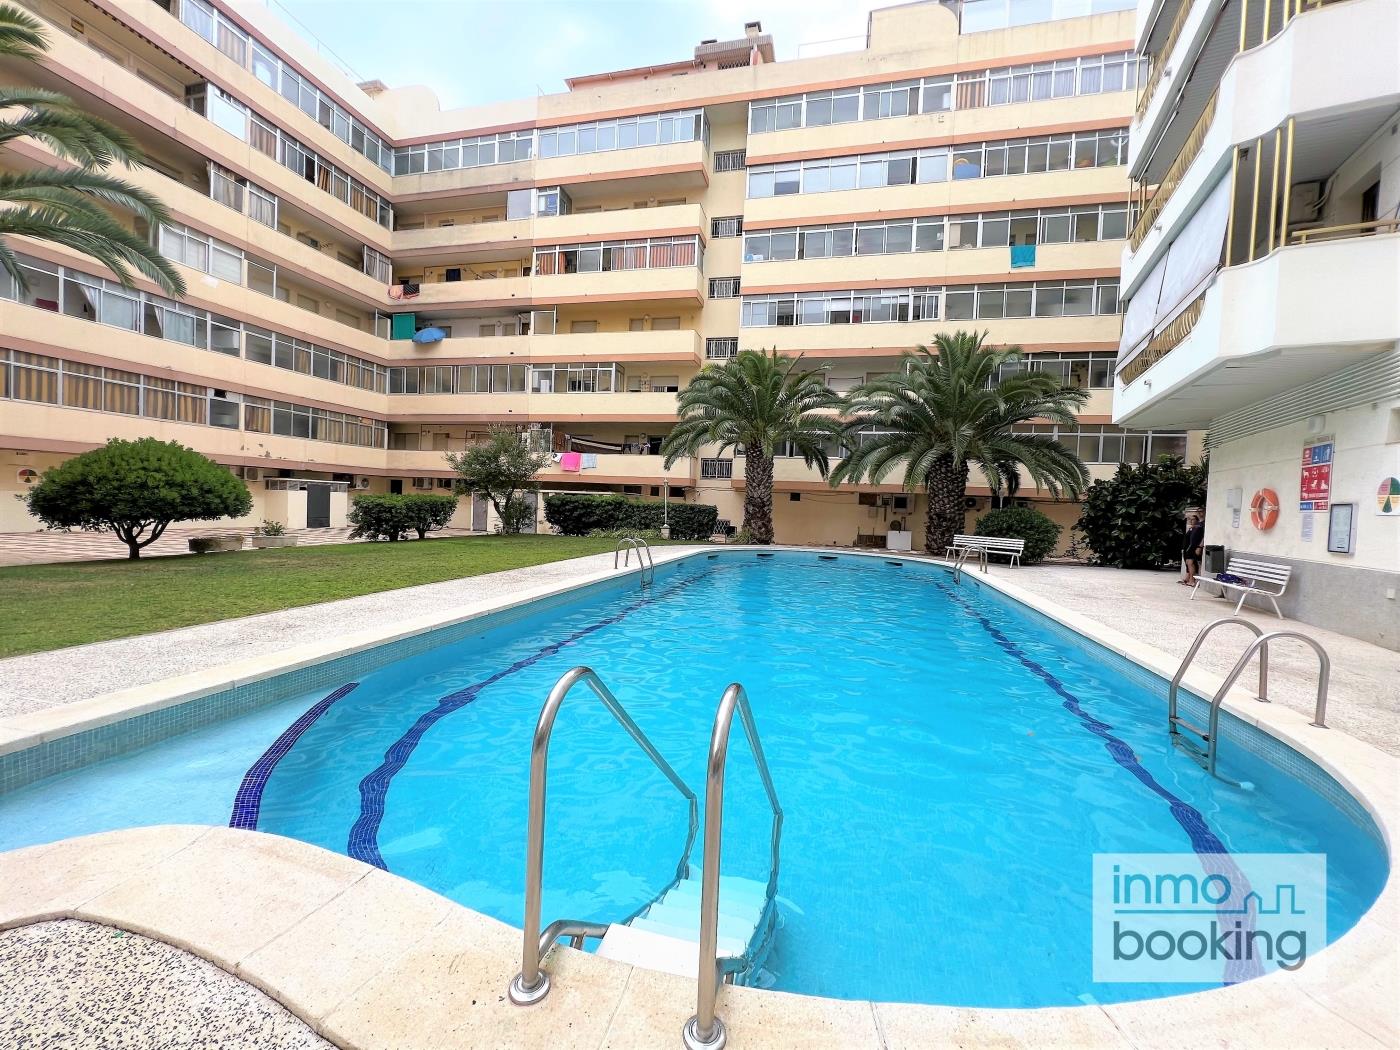 Indasol Apartments, climatitzat i amb piscina a Salou